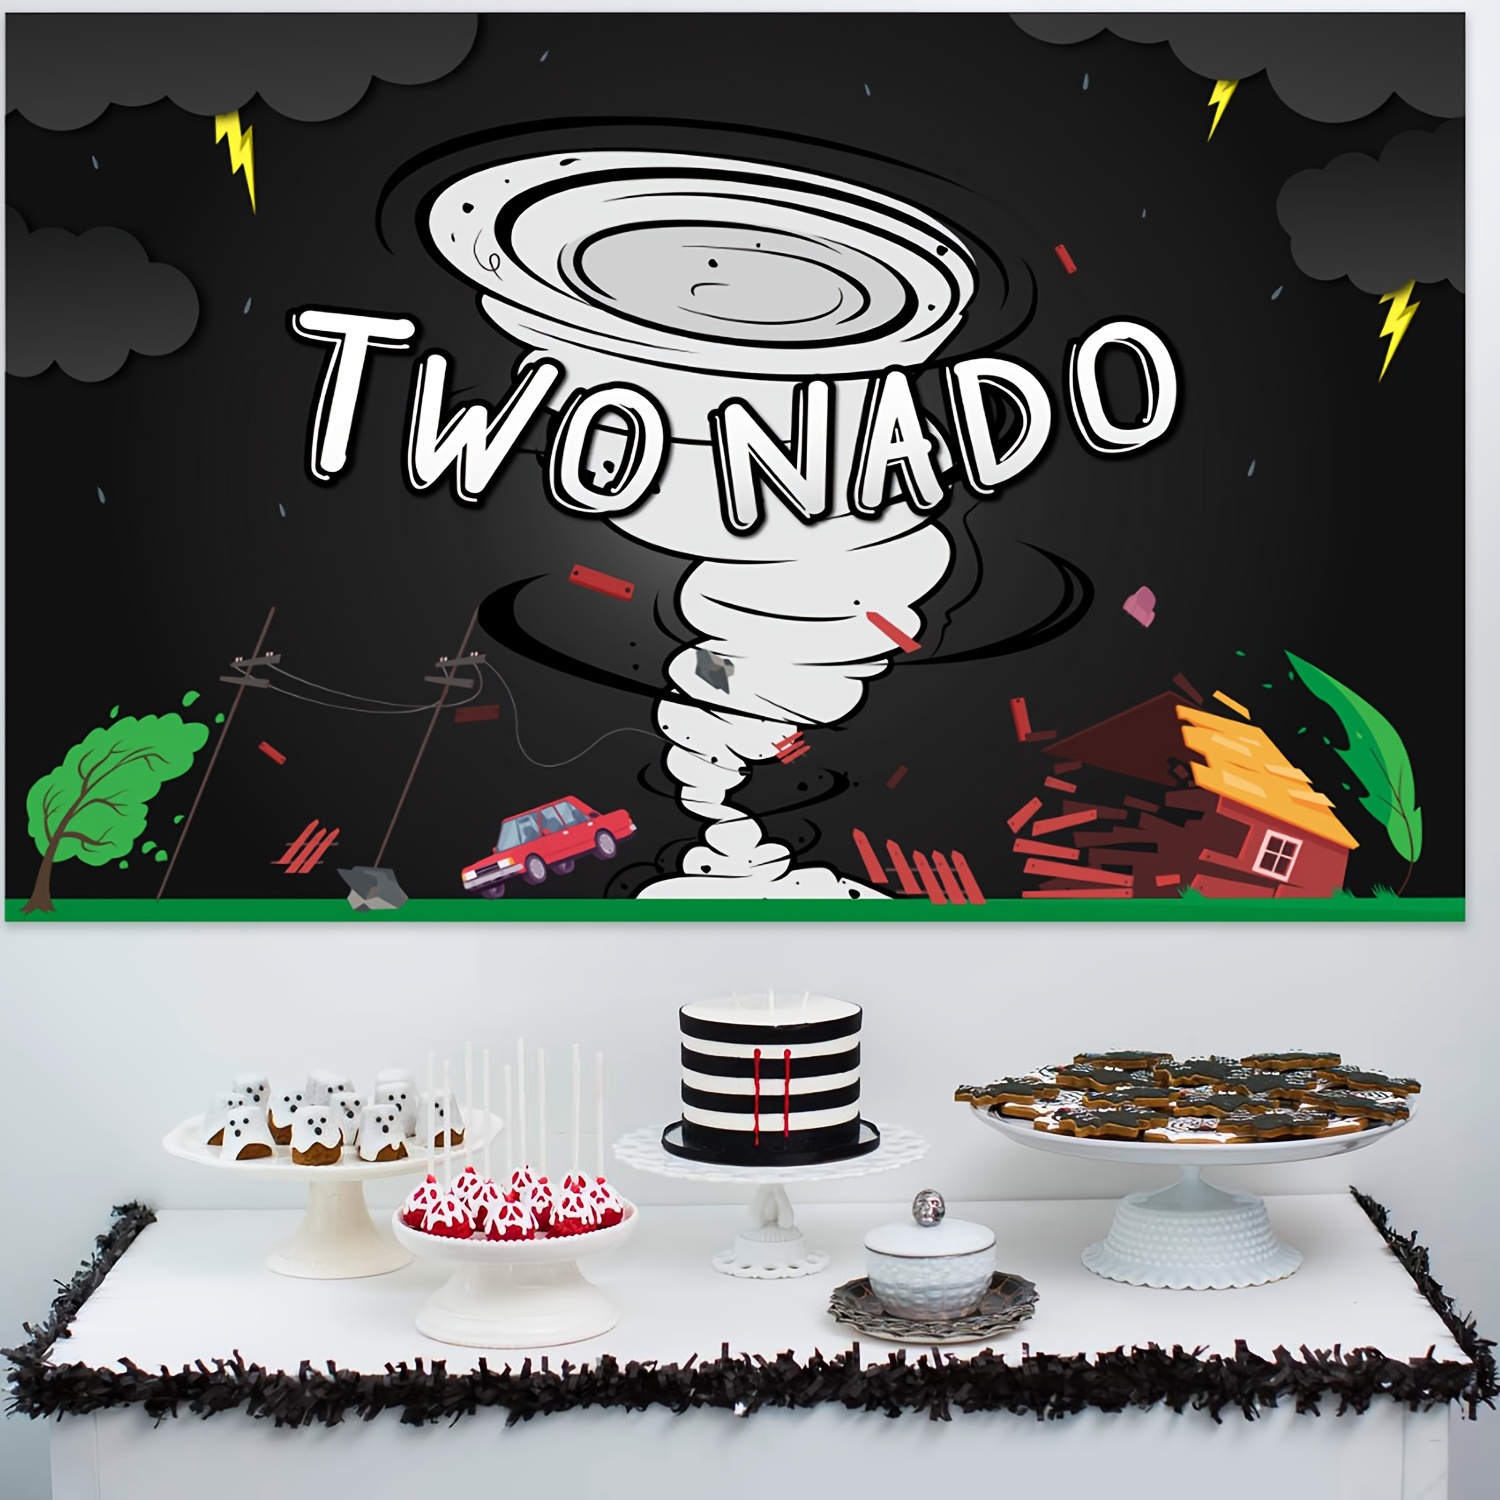 Decoraciones de fiesta de cumpleaños de tornado, suministros de fiesta de  segundo cumpleaños de Twonado, dos globos NADO para decoración de pastel